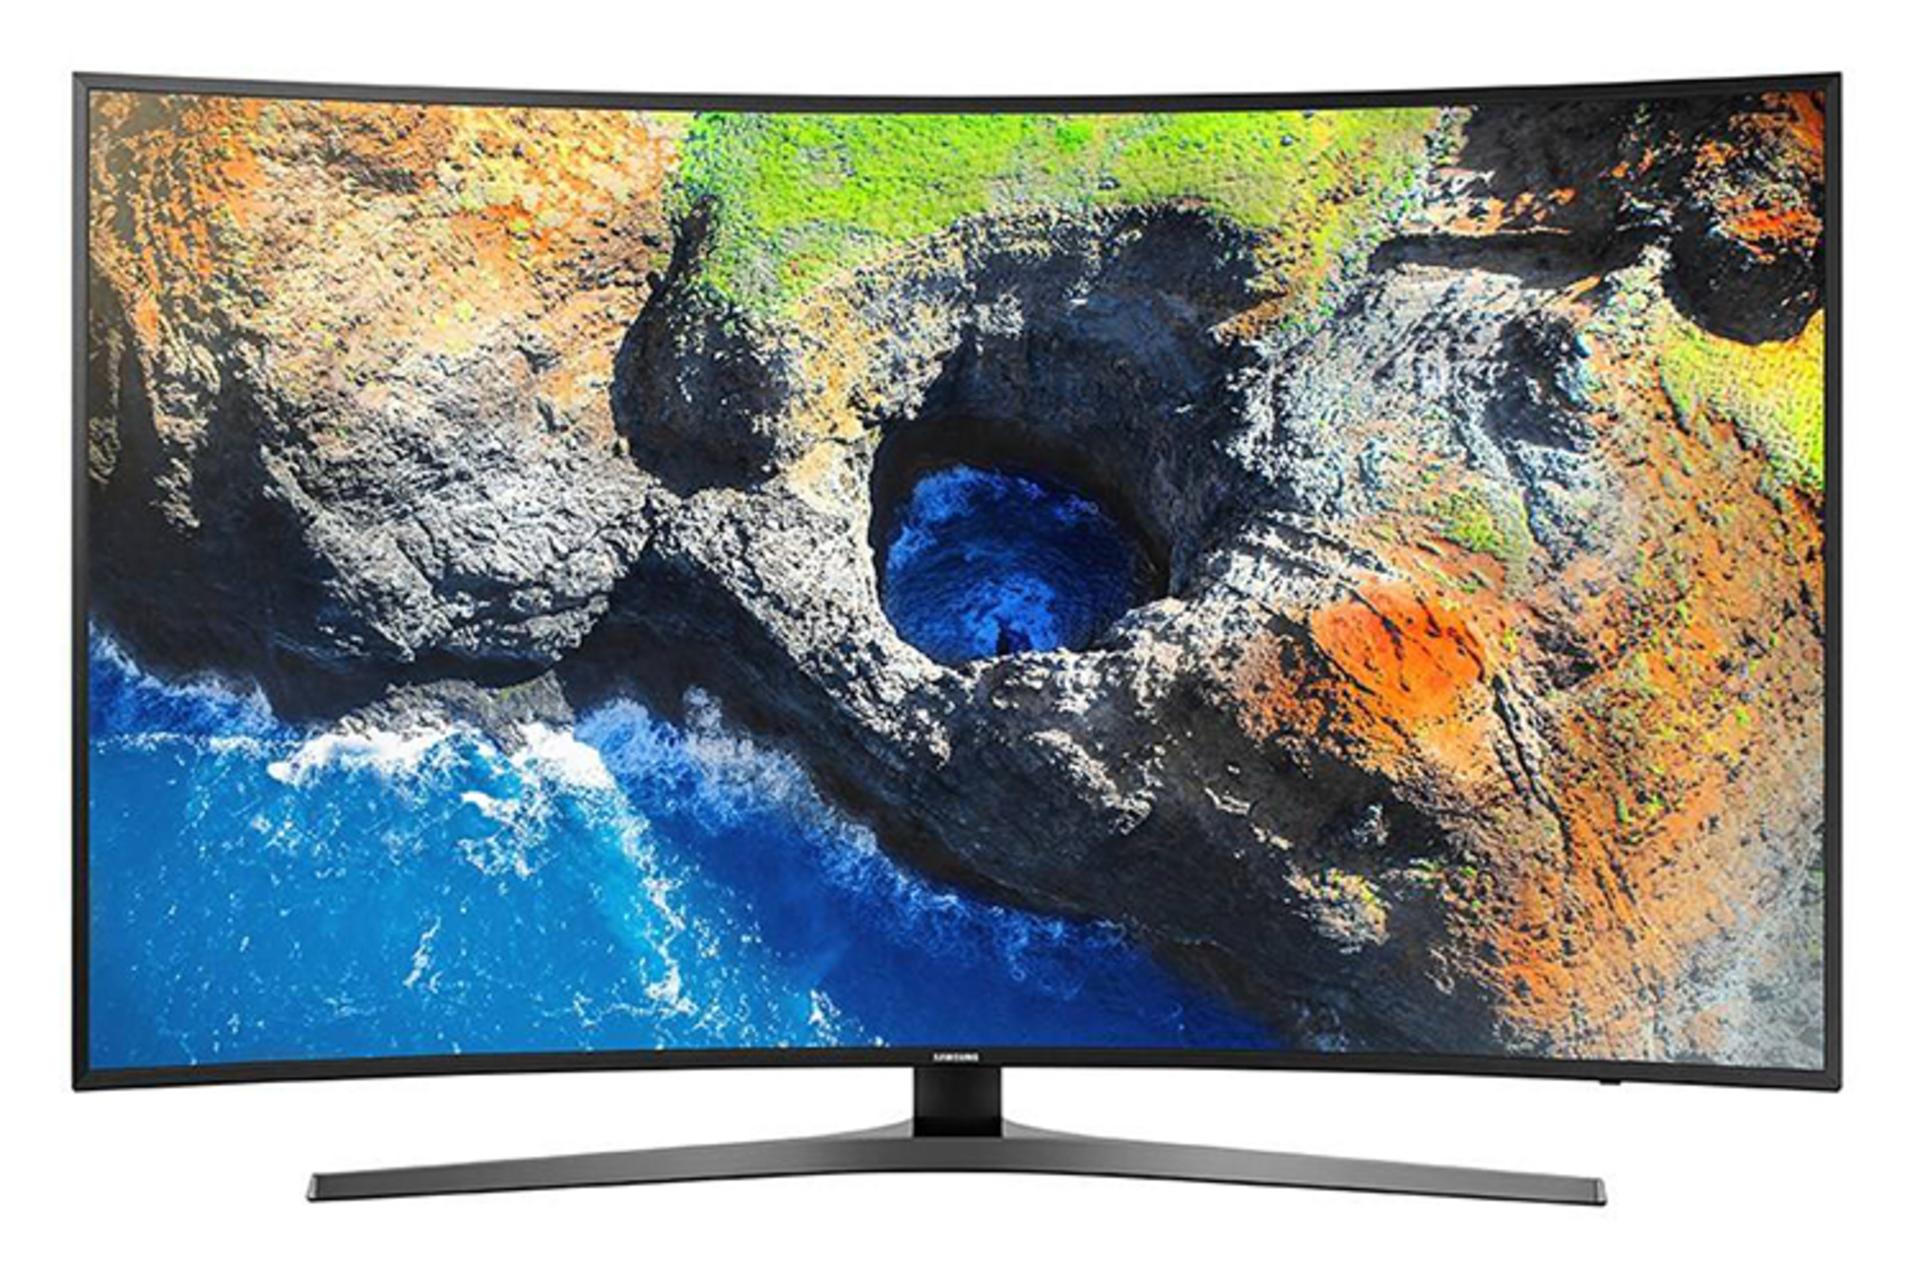 نمای جلو تلویزیون سامسونگ MU7995 مدل 55 اینچ با صفحه روشن